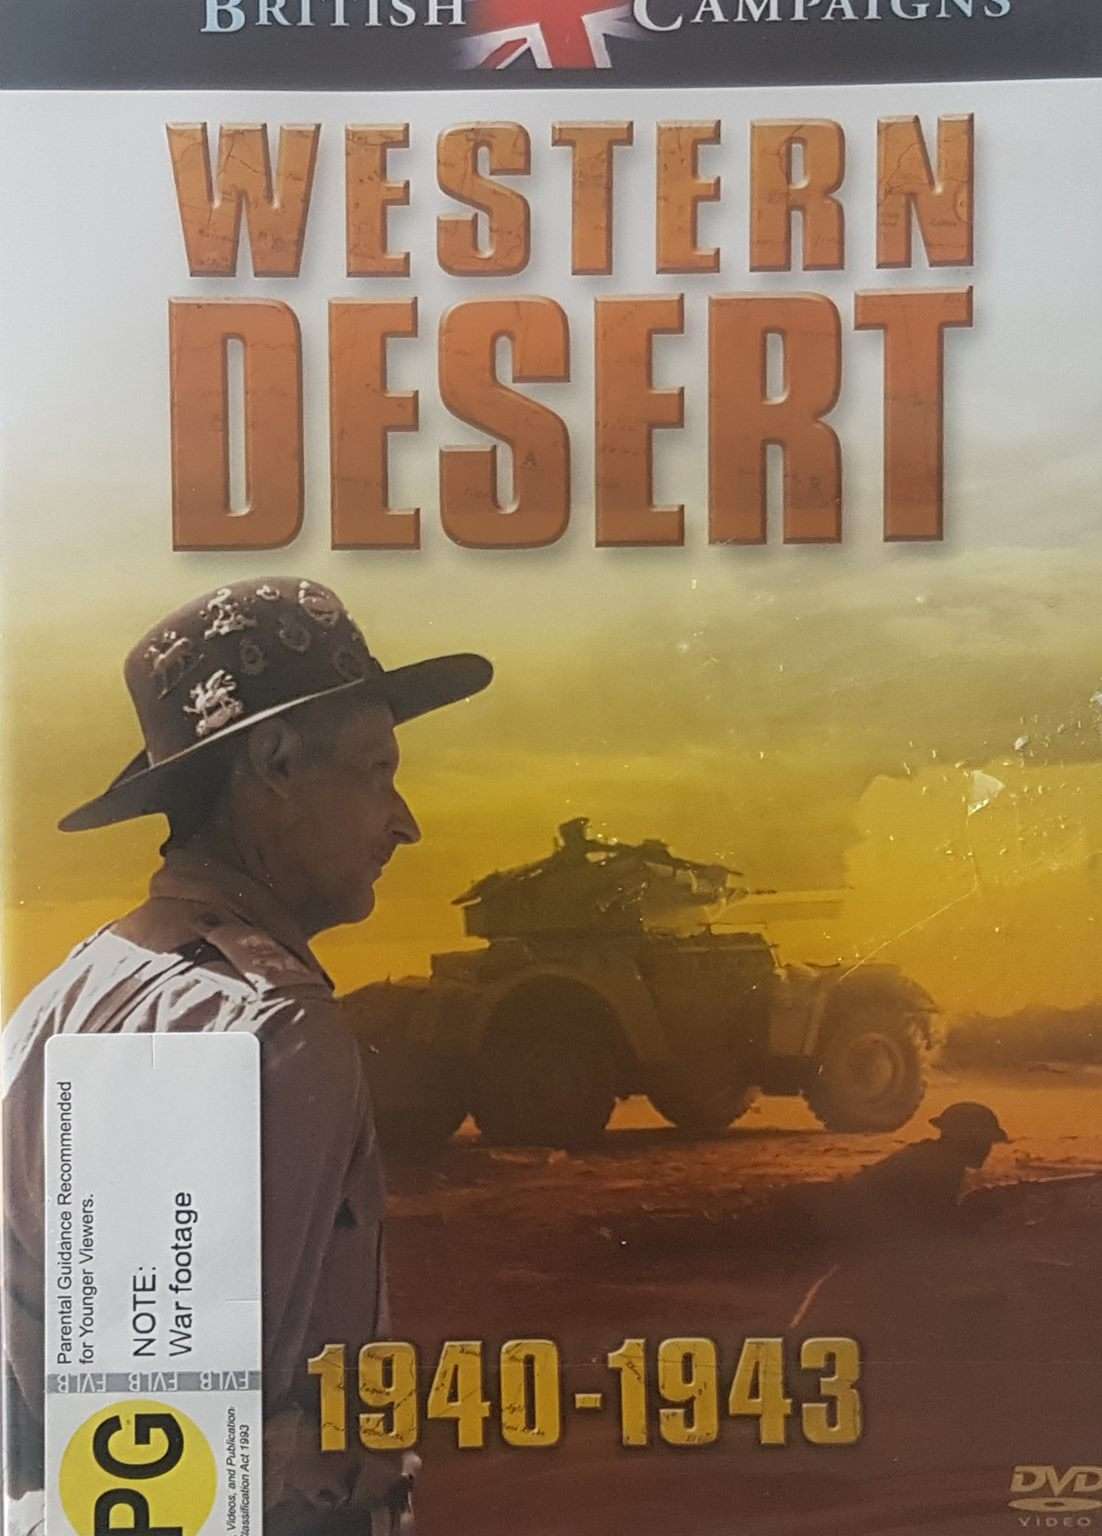 British Campaigns: Western Desert 1940-1943